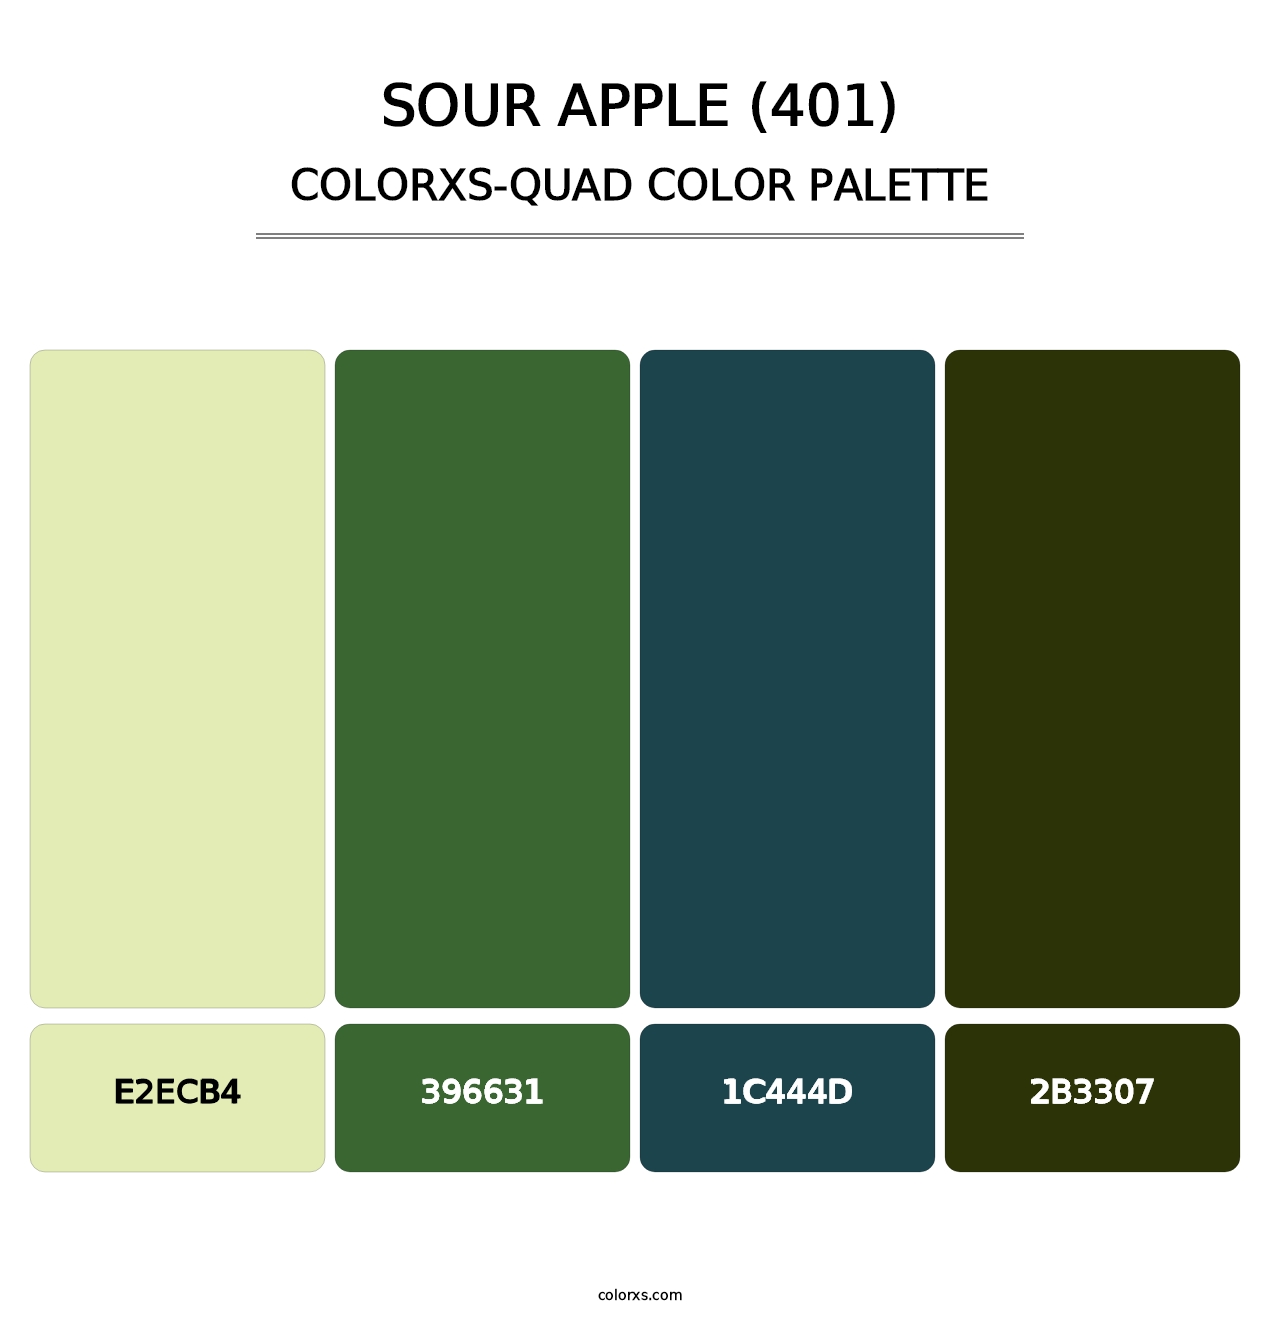 Sour Apple (401) - Colorxs Quad Palette